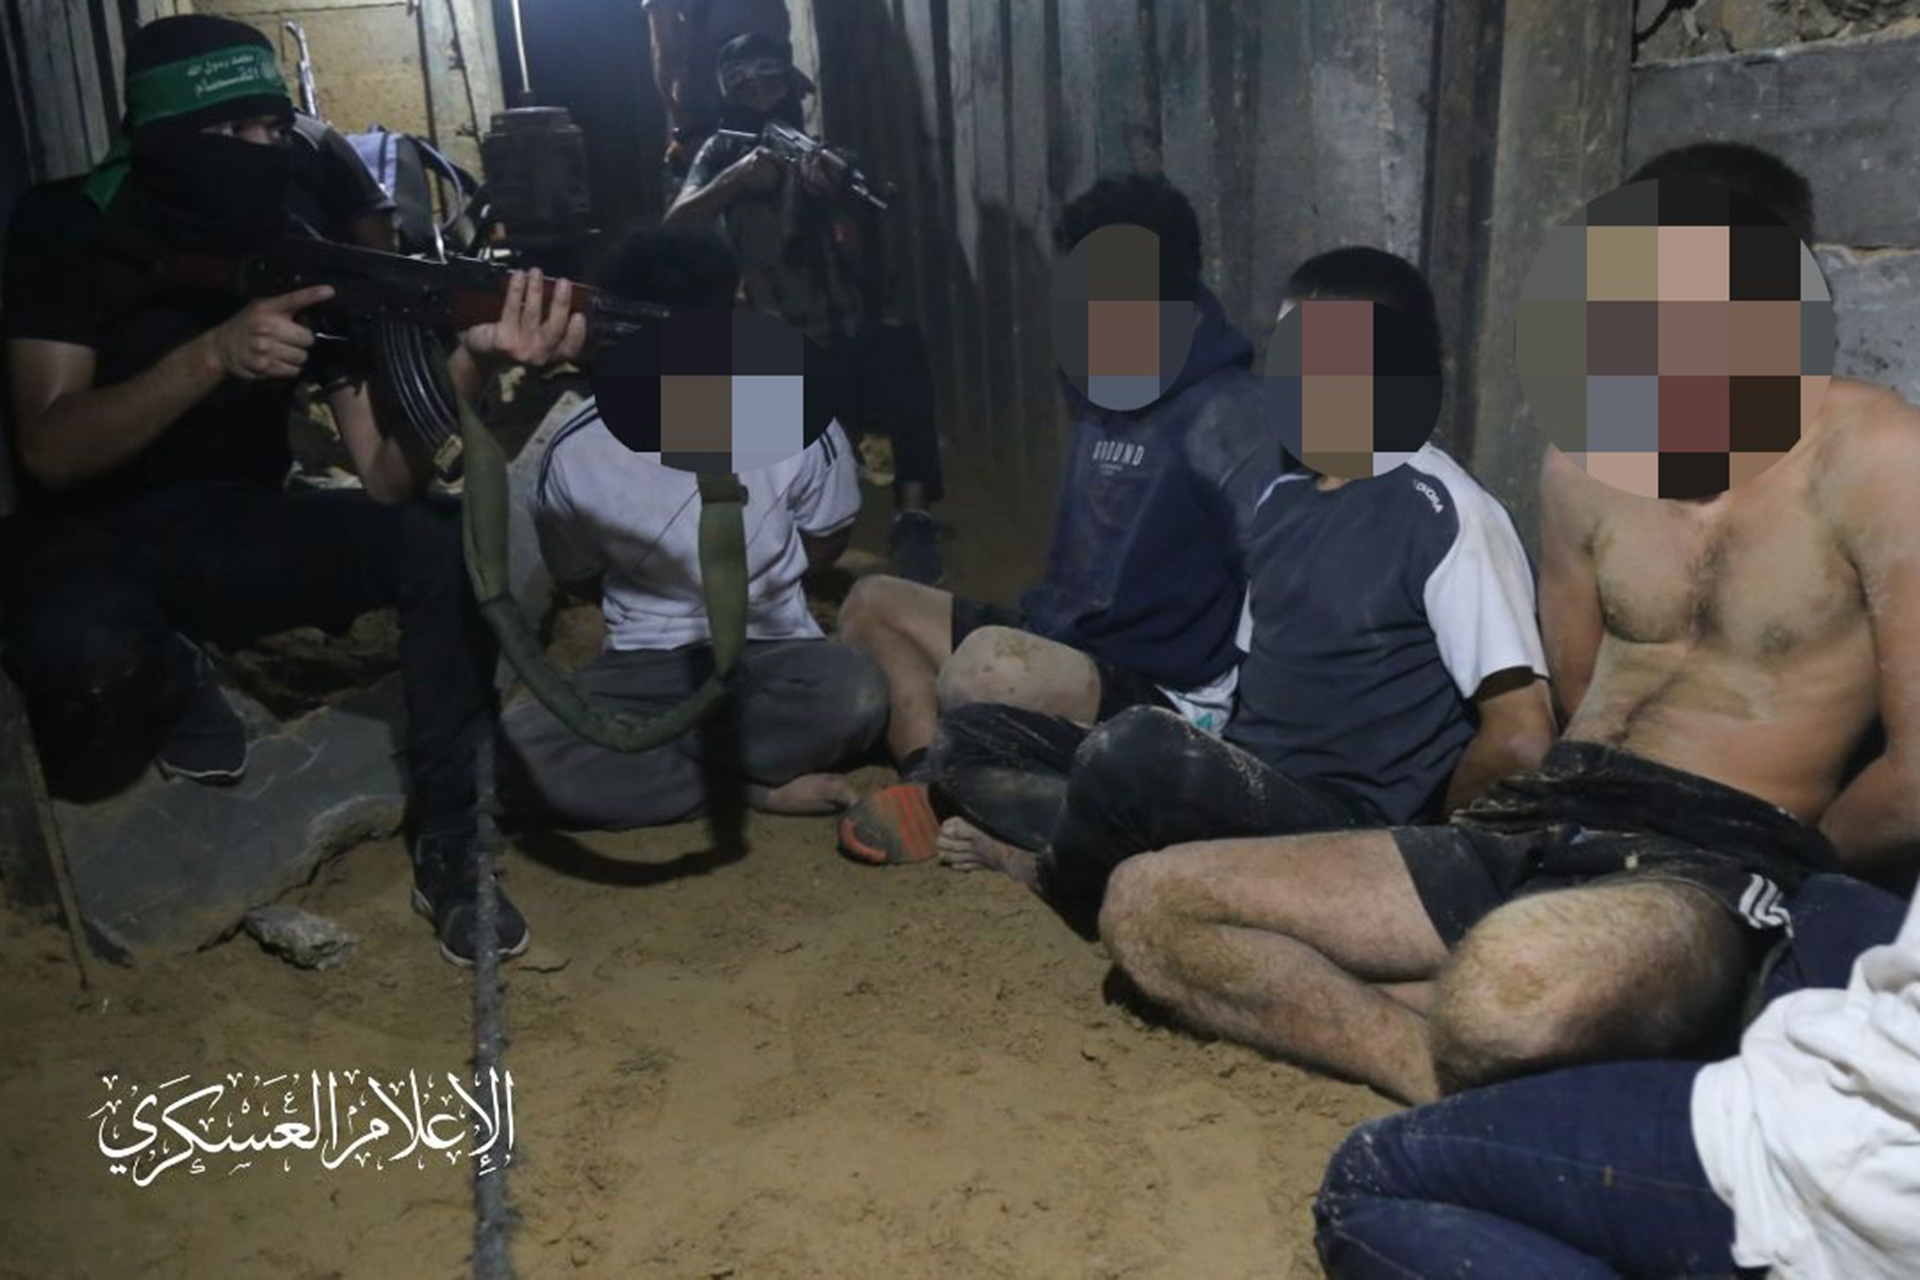 إطلاق سراح 12 عاملا تايلنديا كانوا محتجزين بغزة بعد جهود قطرية | أخبار – البوكس نيوز